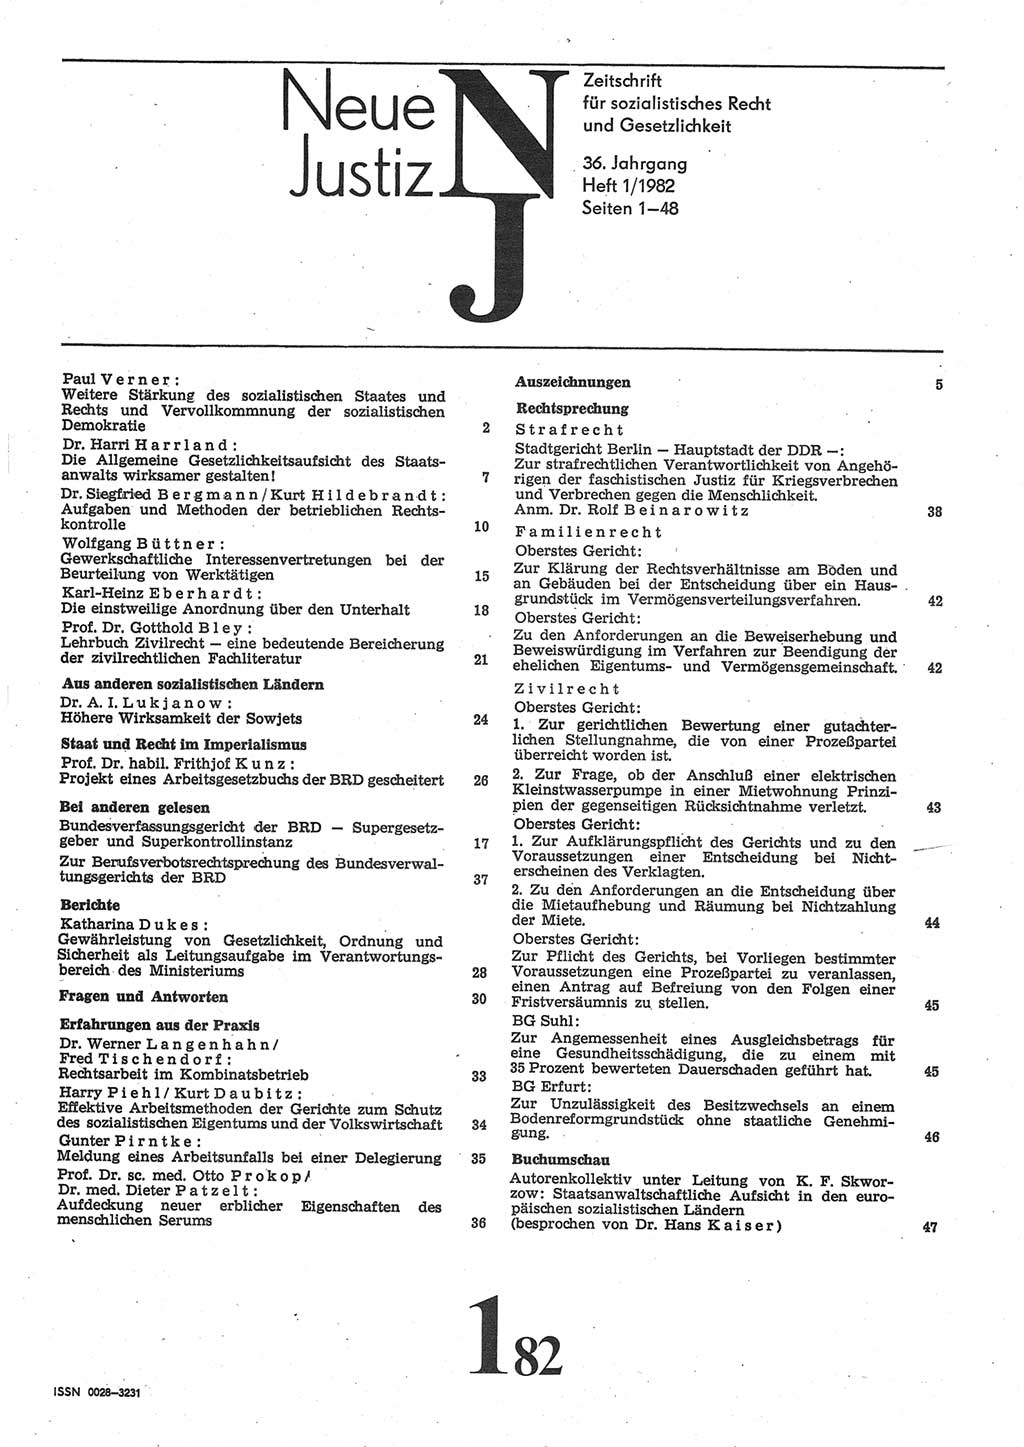 Neue Justiz (NJ), Zeitschrift für sozialistisches Recht und Gesetzlichkeit [Deutsche Demokratische Republik (DDR)], 36. Jahrgang 1982, Seite 1 (NJ DDR 1982, S. 1)